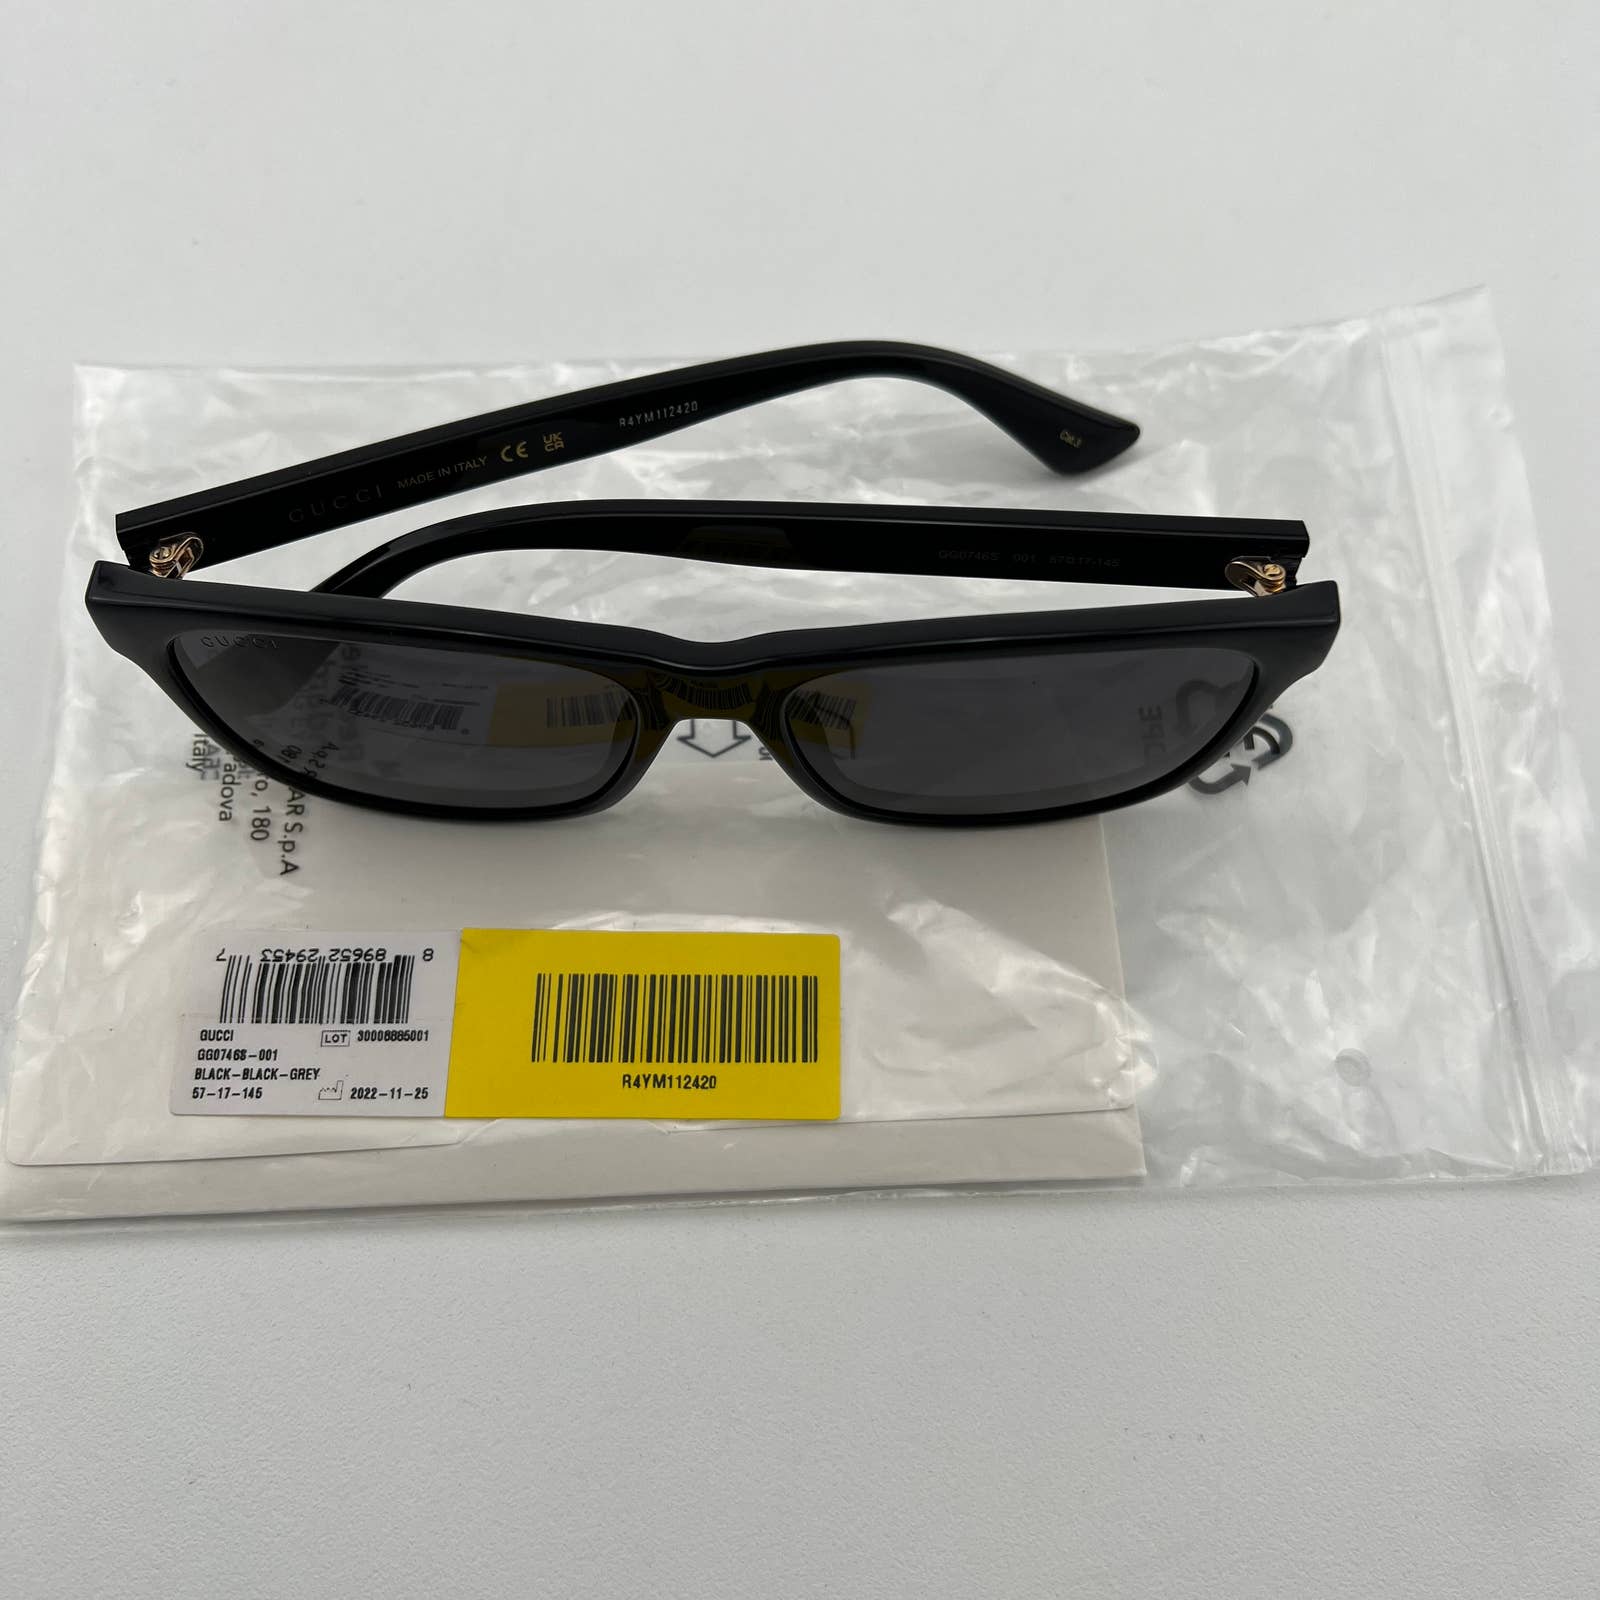 Men Black Square Sunglasses GG0746S-001 Gray Lens